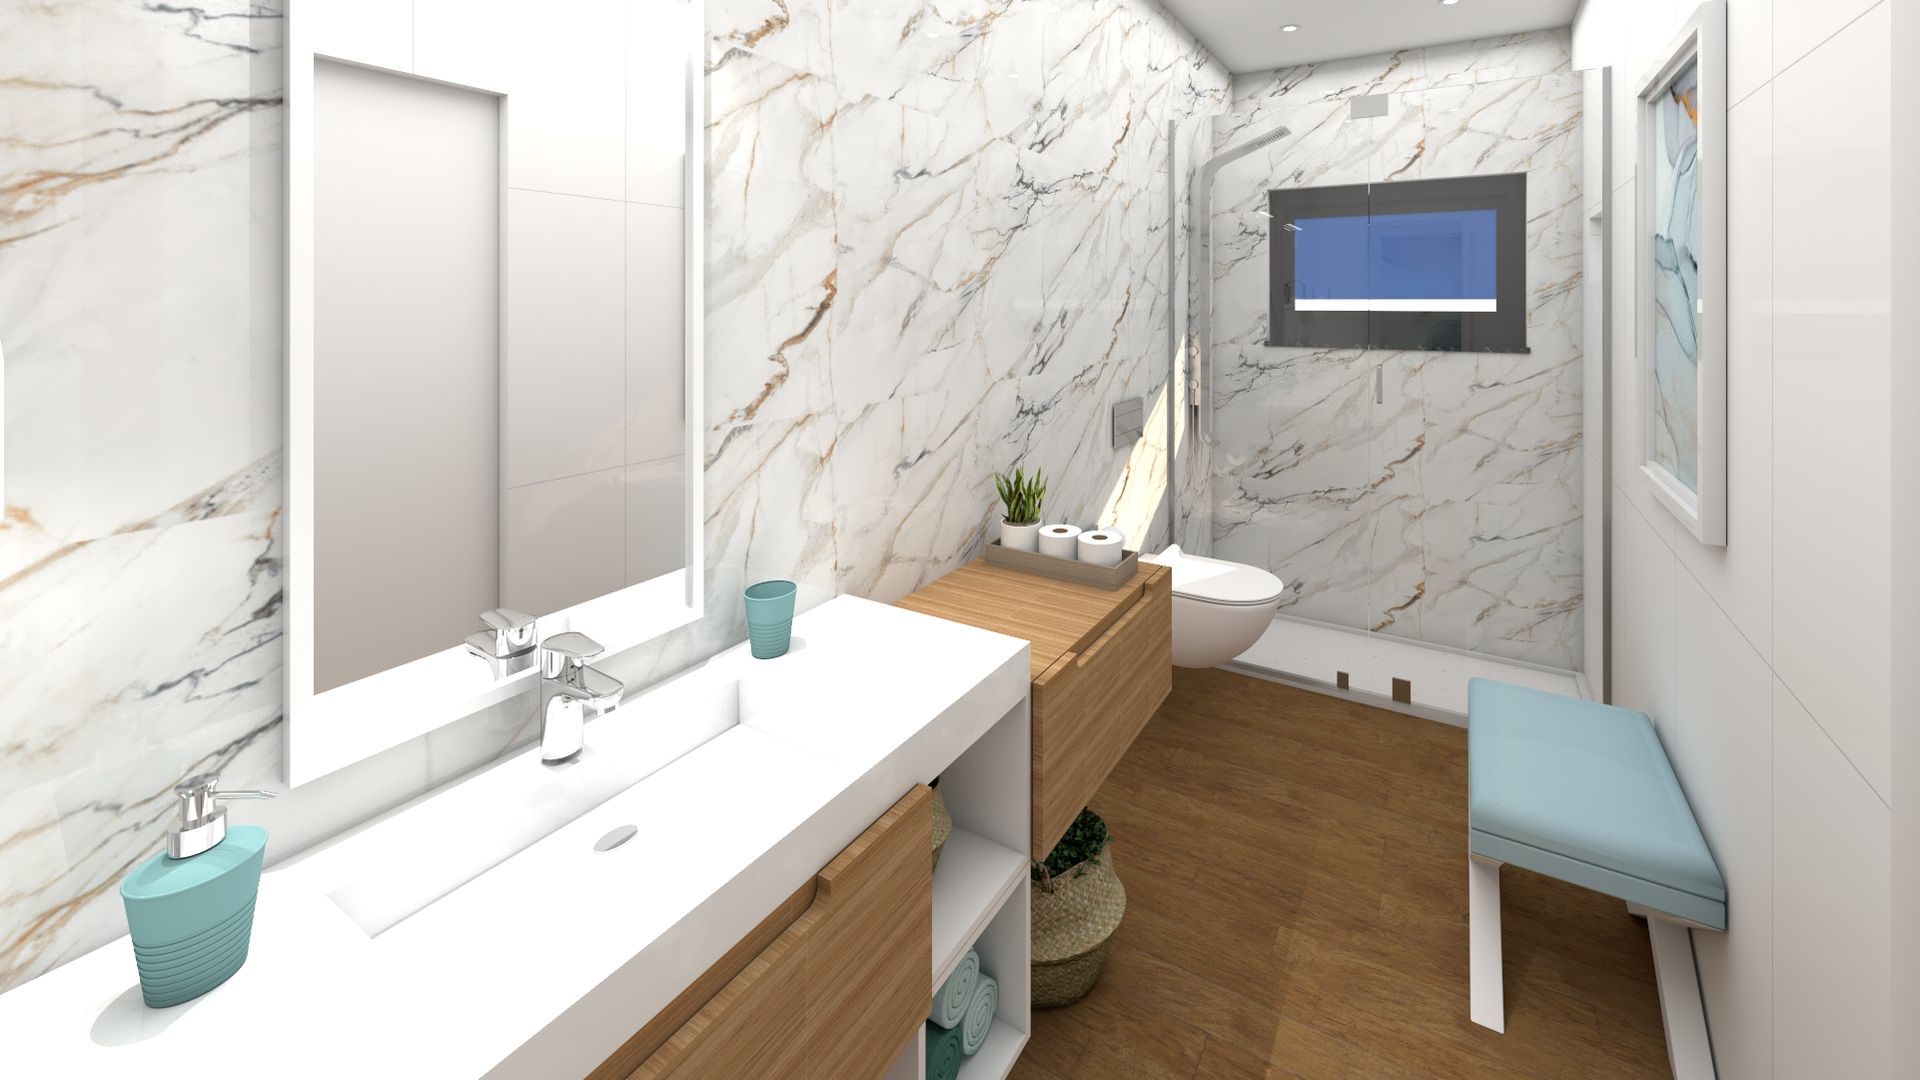 Casa de Banho Suite 2 Ginkgo Design Studio Casas de banho modernas Cerâmica Casa de banho, móvel suspenso, madeira, branco, mármore Callacata gold, moderno, contemporâneo